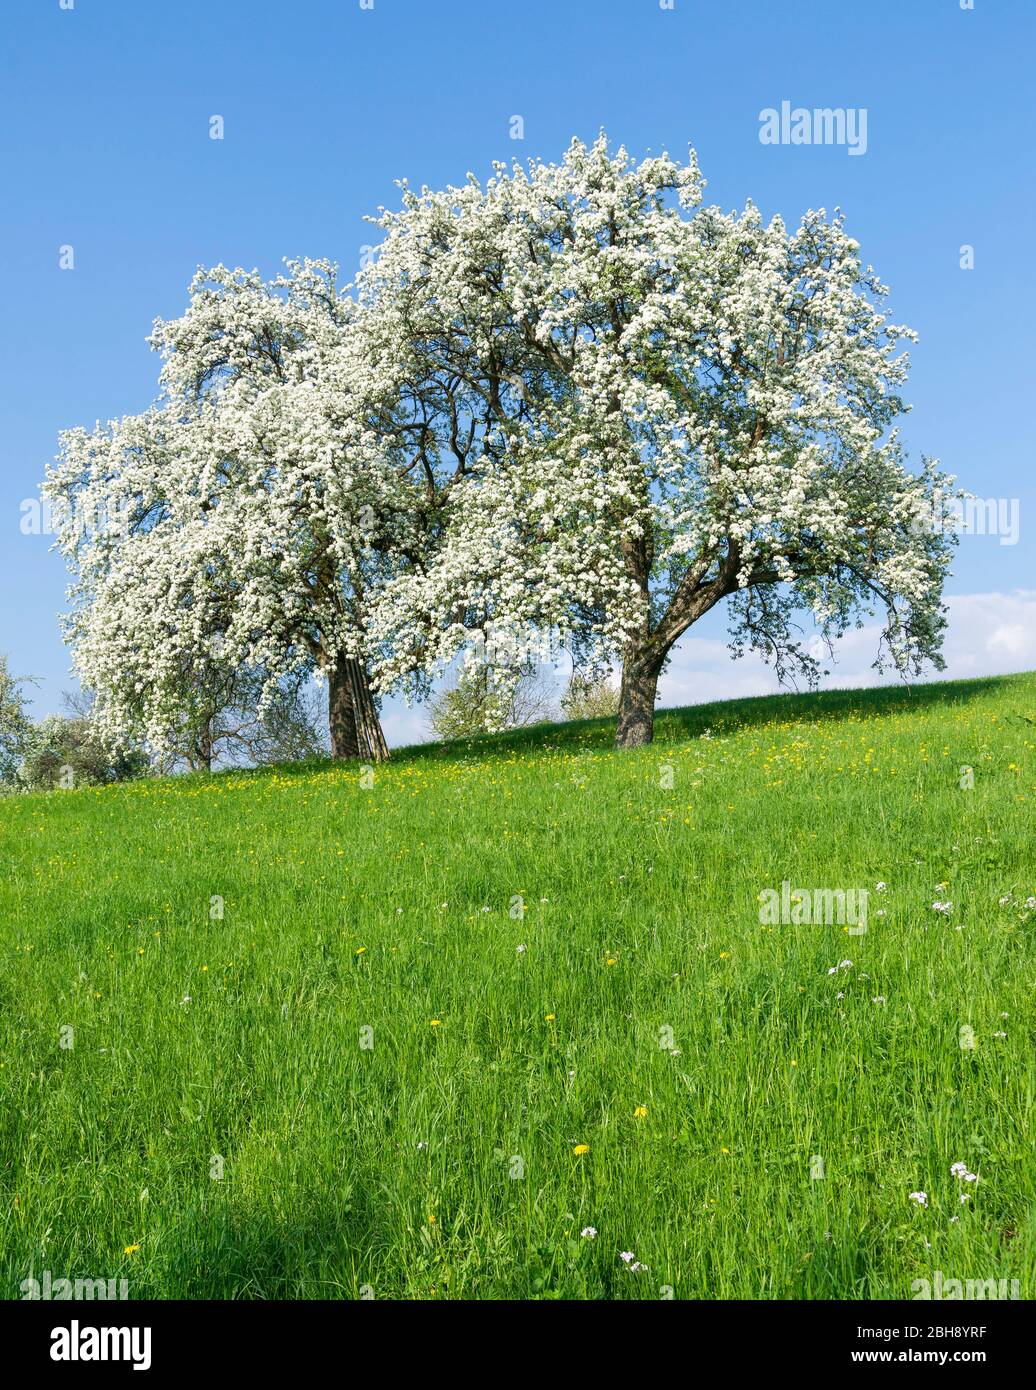 Deutschland, Baden-Württemberg, Metzingen - Glems, zwei blühende Birnbäume auf einer Wiese am Albtrauf Stock Photo